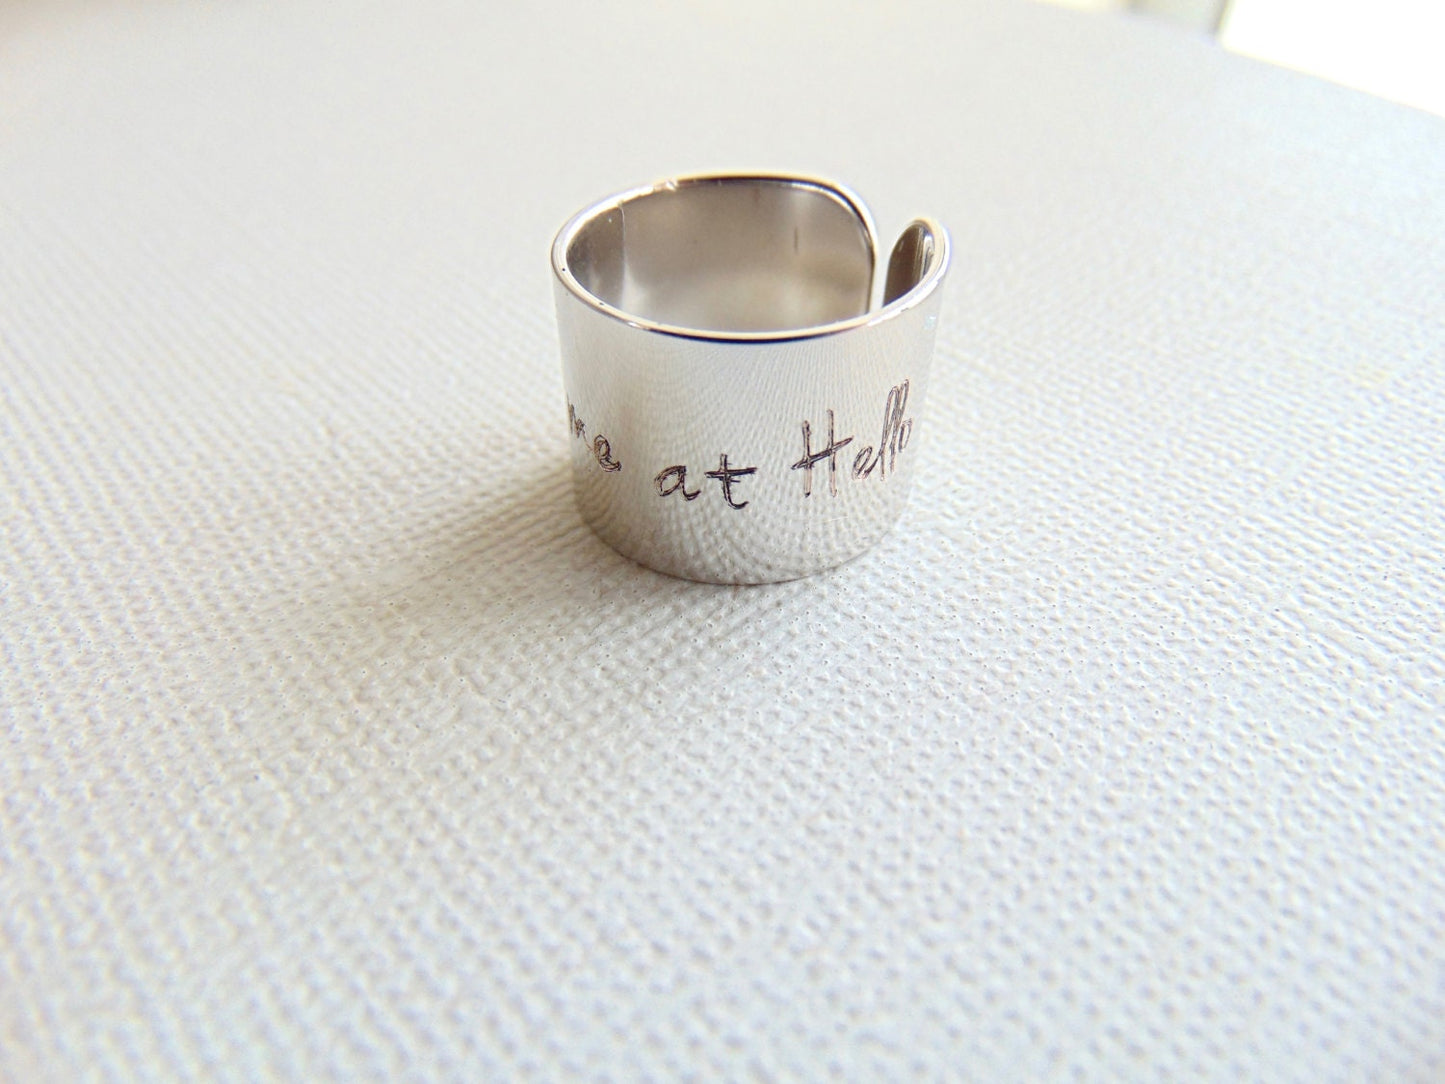 ME TUVISTE en HELLO anillo de mensaje anillo de cita personalizado anillo ajustable joyería personalizada joyería inspiradora, anillo grabado, anillo de puño ancho